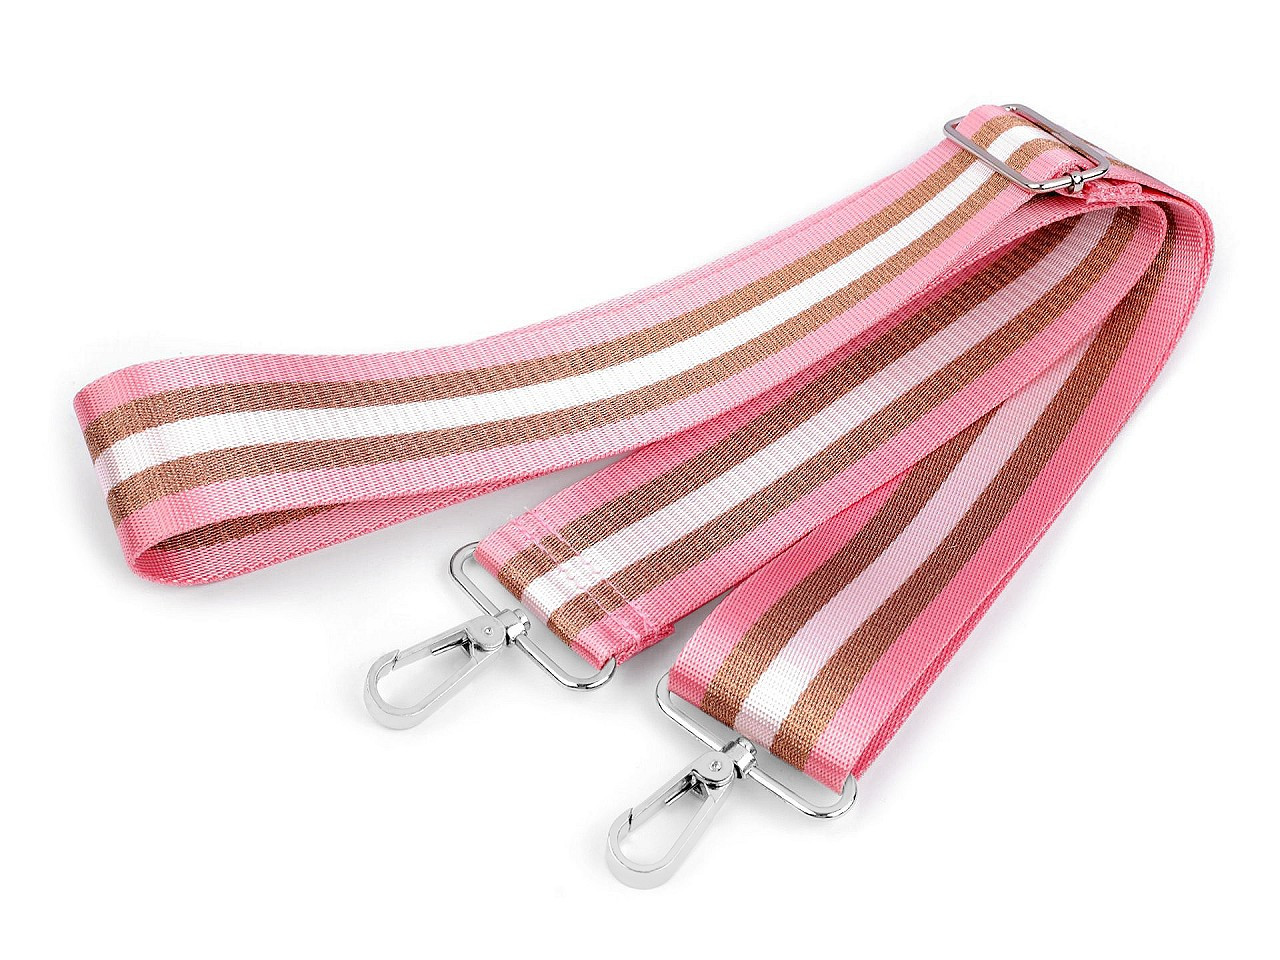 Textilní ucho / popruh na tašku s karabinami šíře 5 cm, barva 1 růžová sv. měděná